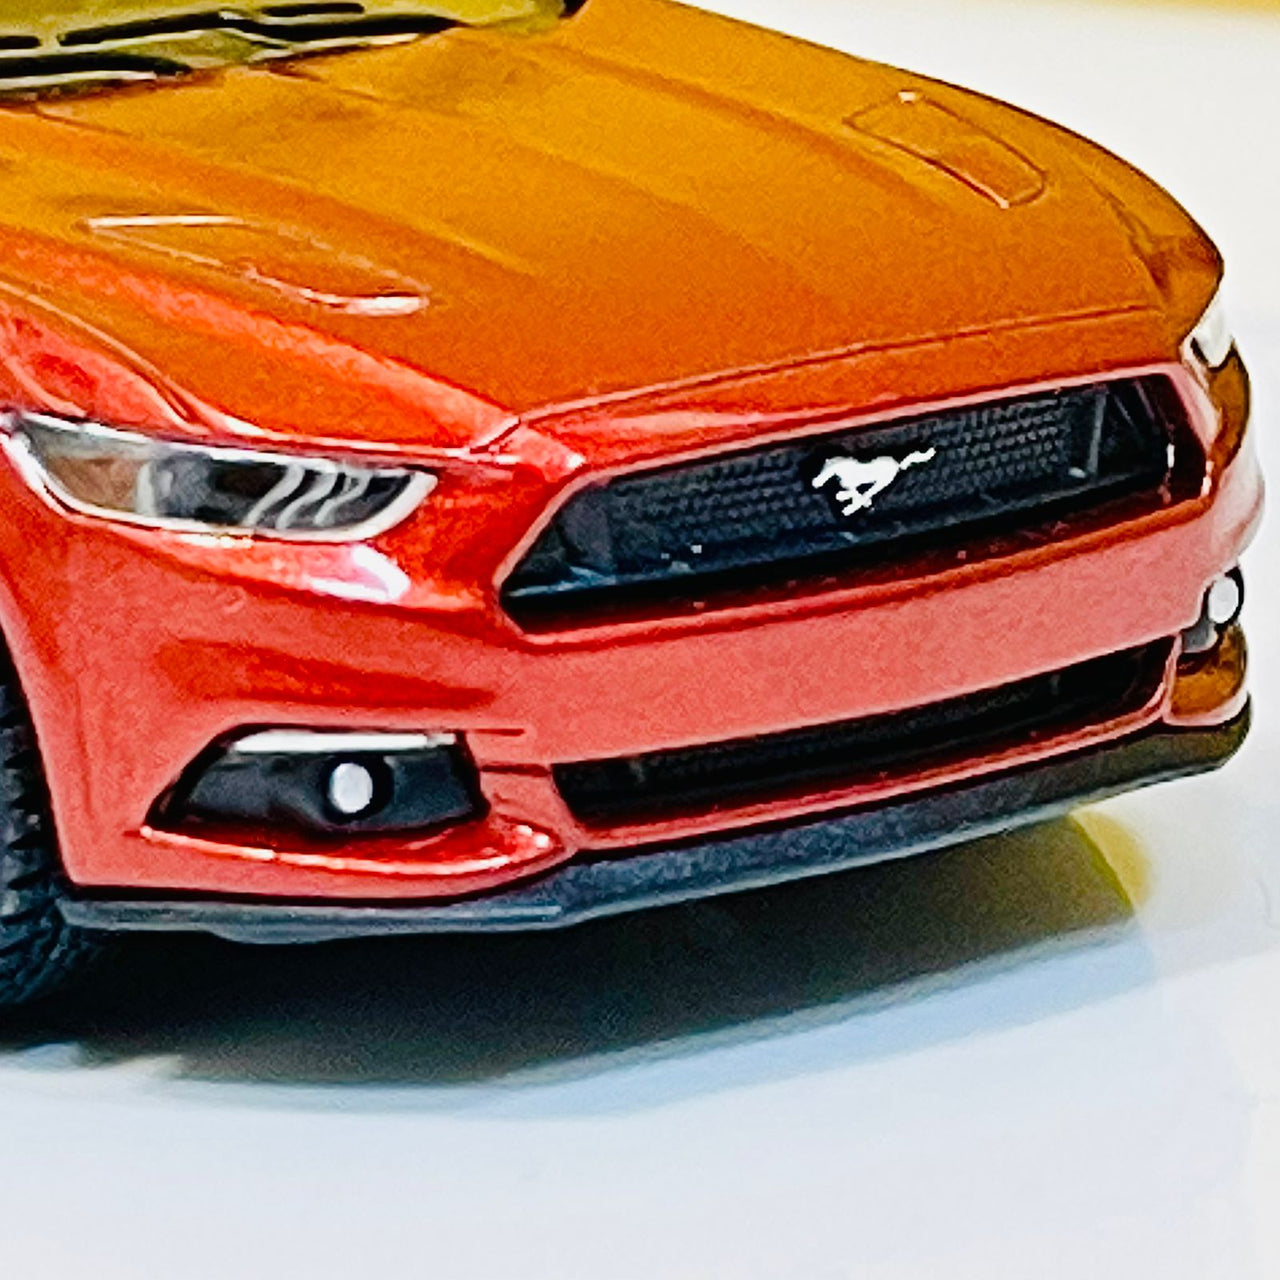 Kinsmart 2015 Ford Mustang GT